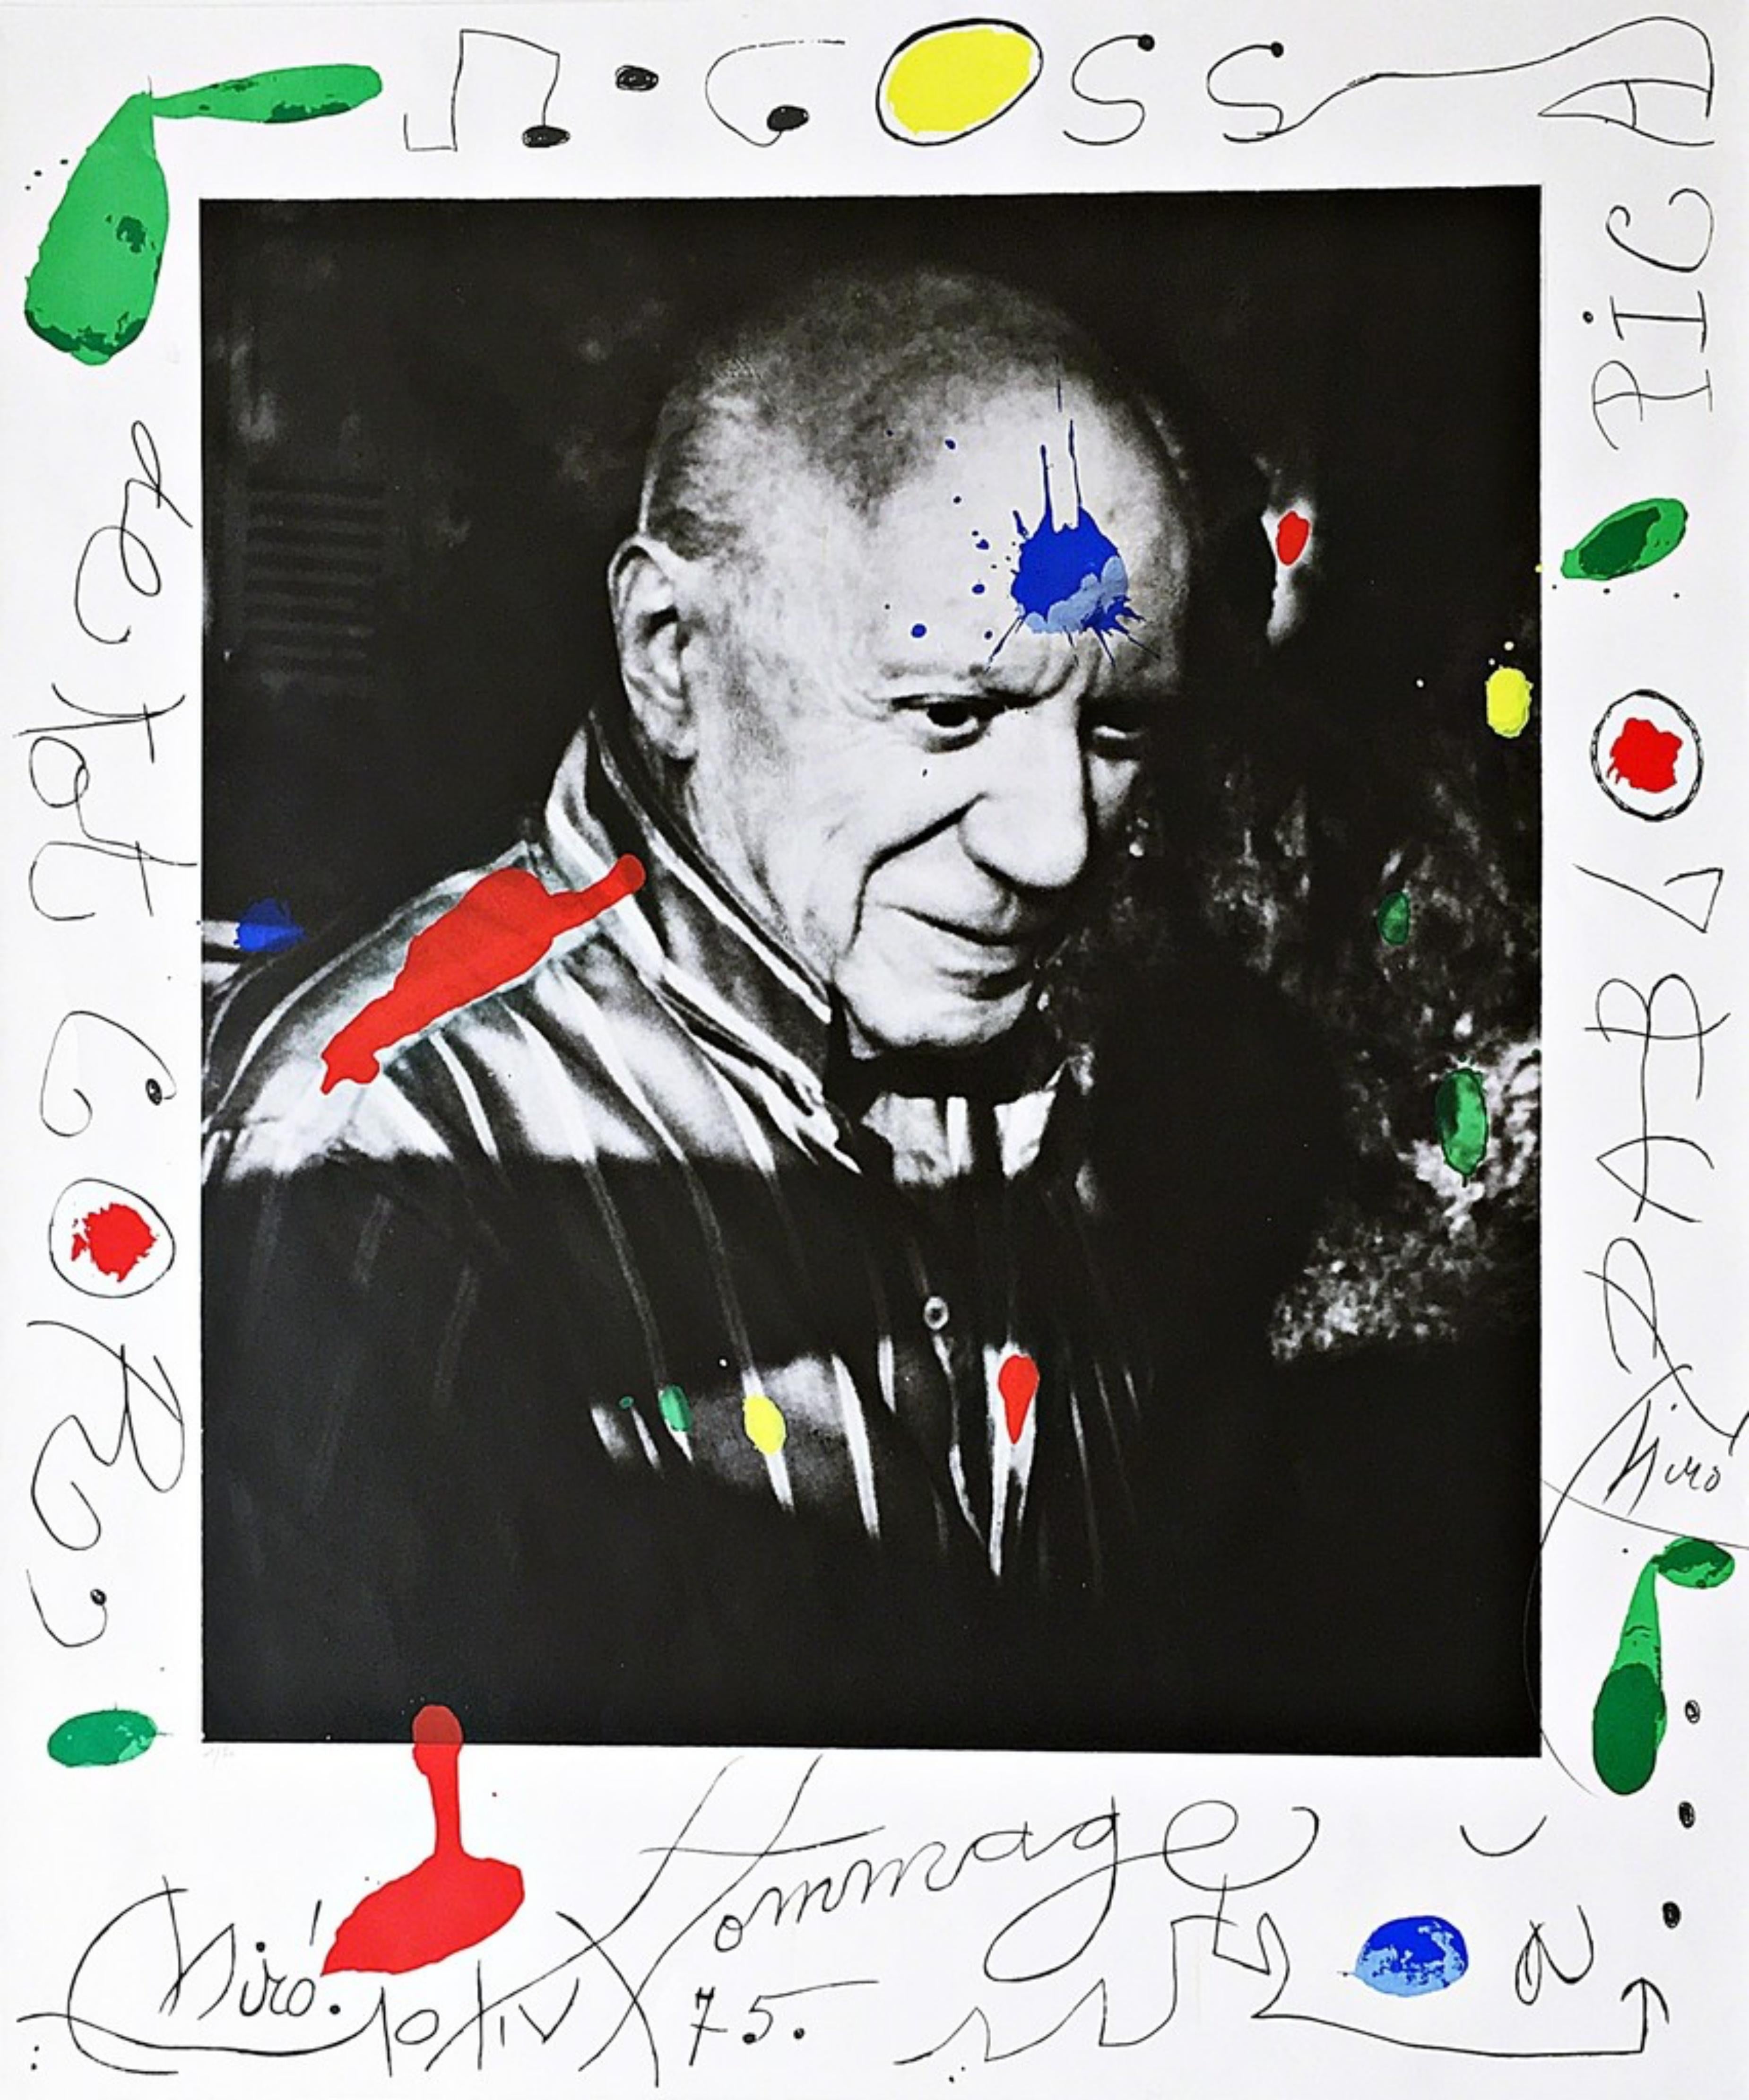 Hommage à Picasso (Homage to Picasso) édition limitée Joan Miro sérigraphie 